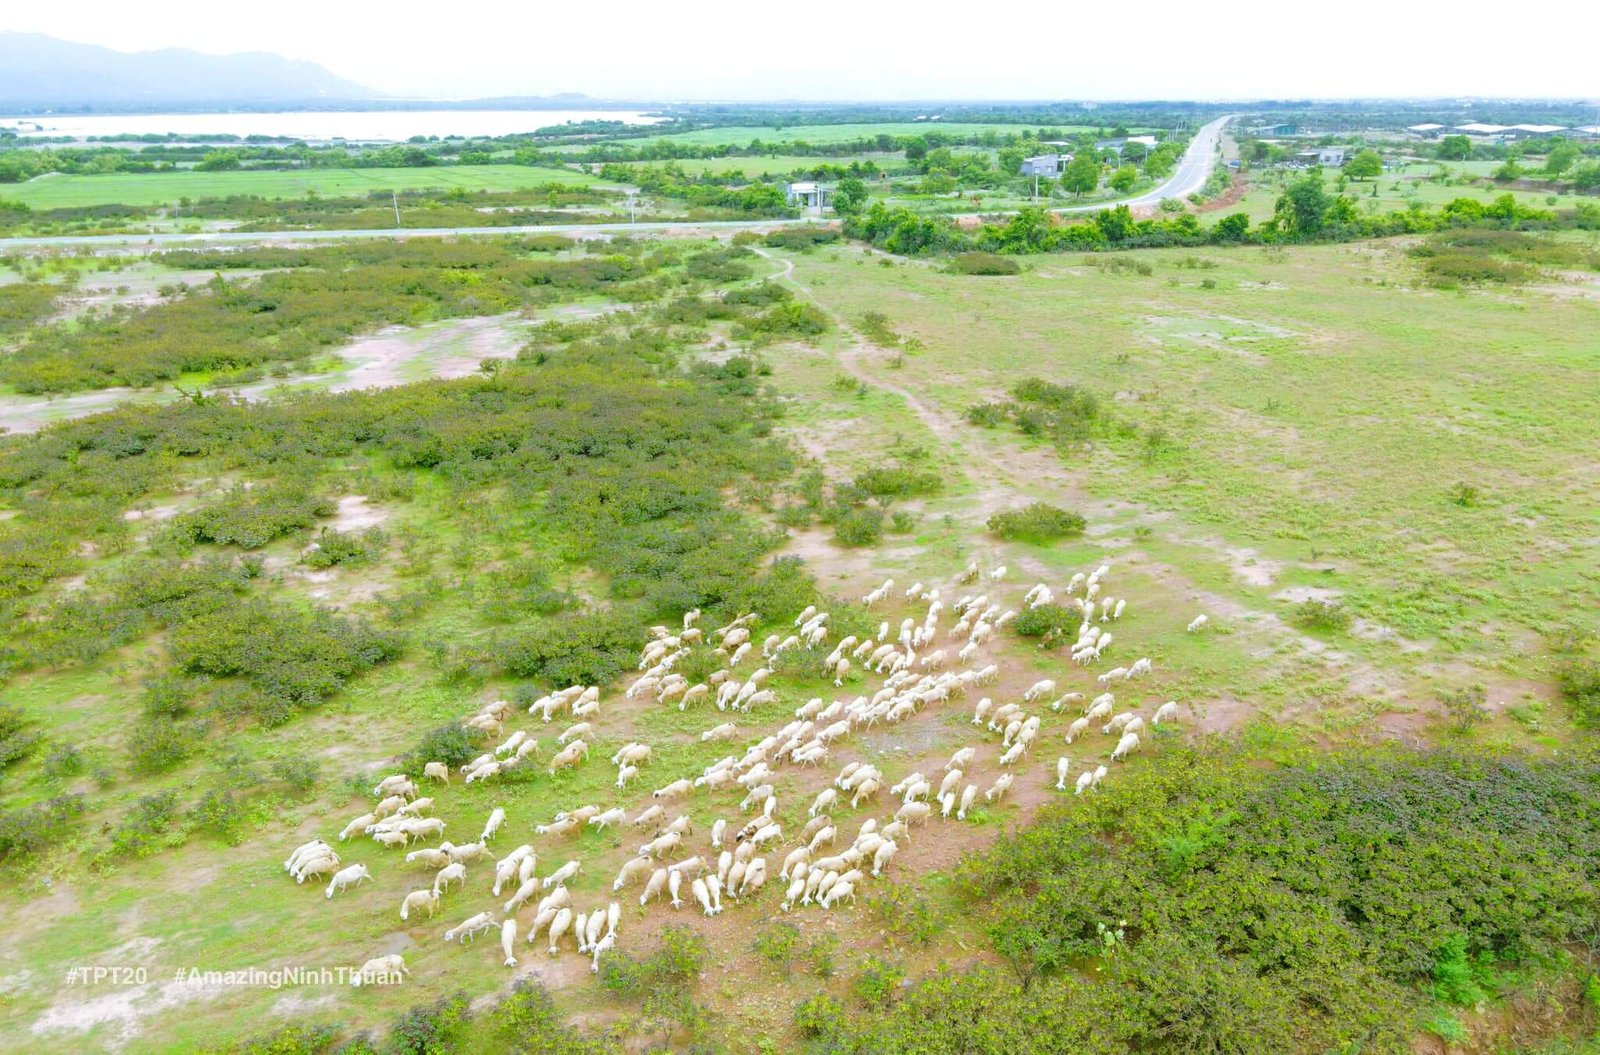 Cừu ở An Hòa được thả trên nhưng bãi cỏ rộng lớn như thế này. Ảnh: Trần Phương Trình